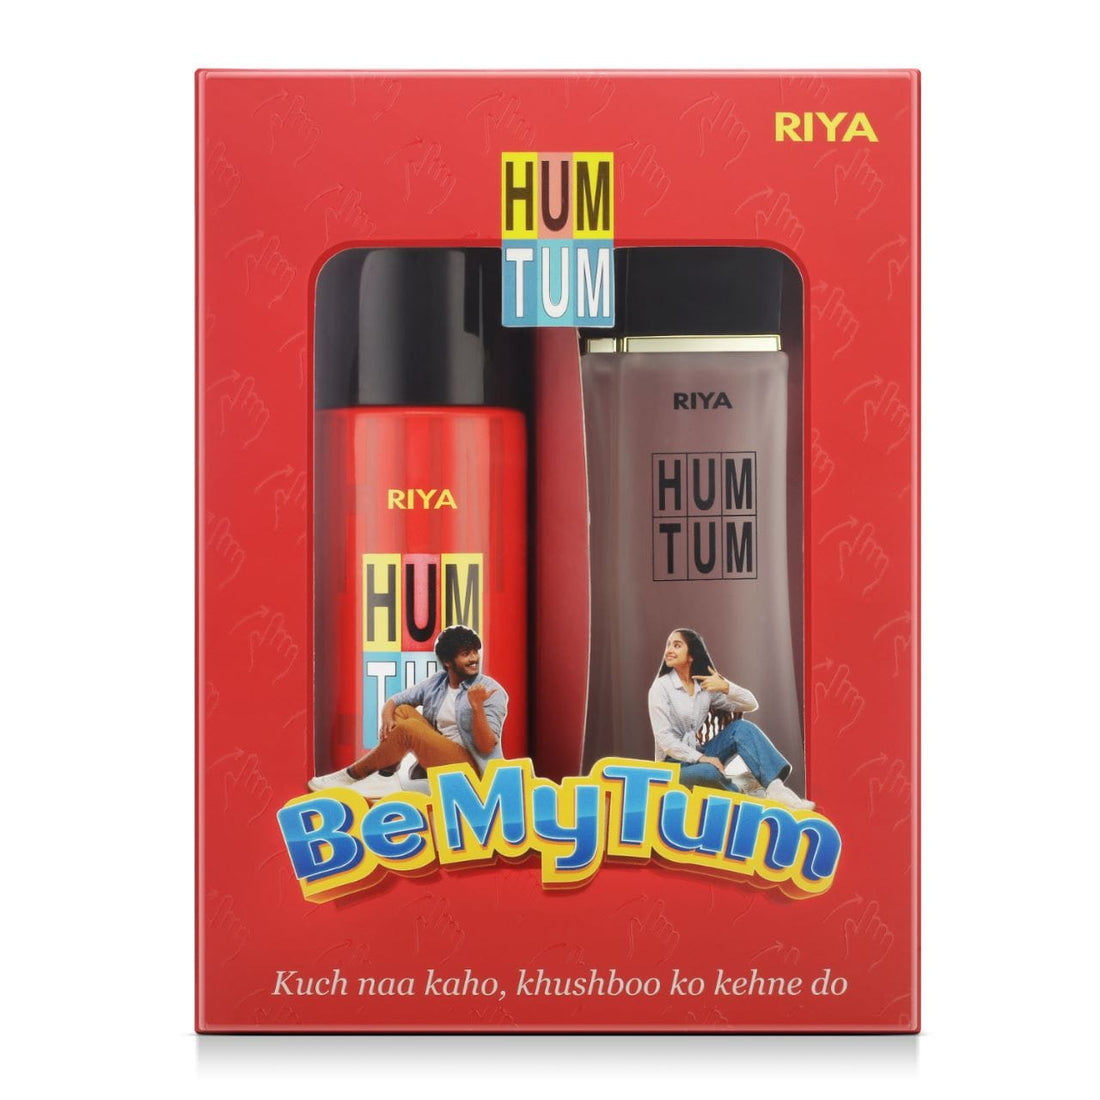 Riya Hum Tum Perfume &amp; Body Spray Combo Pack (100ML + 150ML)